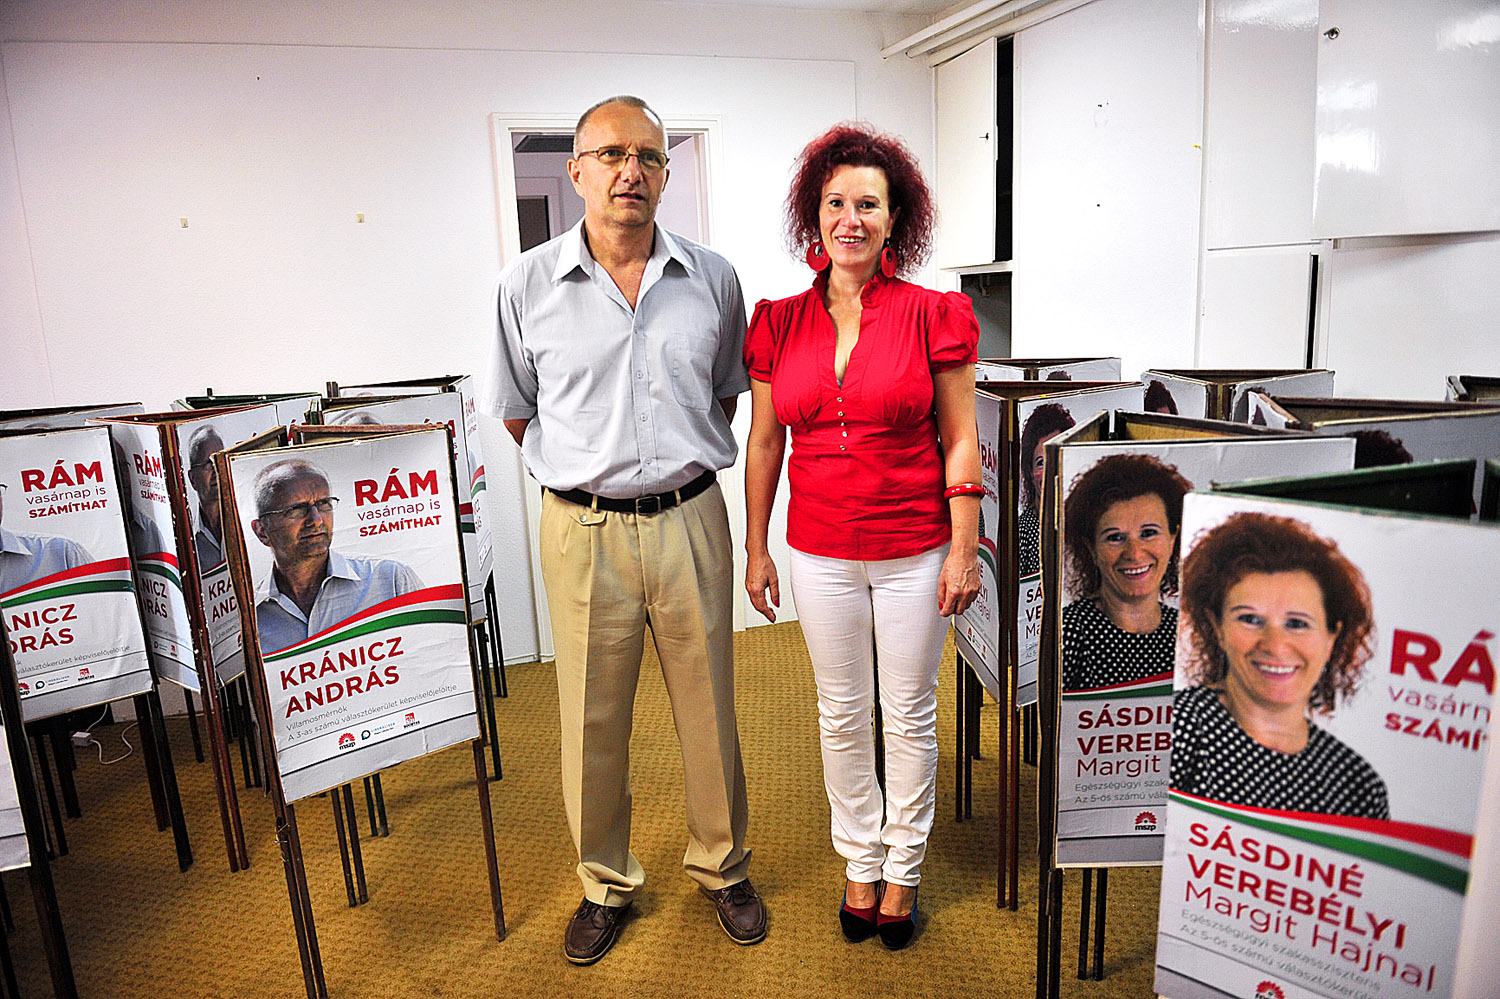 Kránicz András és Sásdiné Verebélyi Margit Hajnal MSZP-jelölt a kampányban